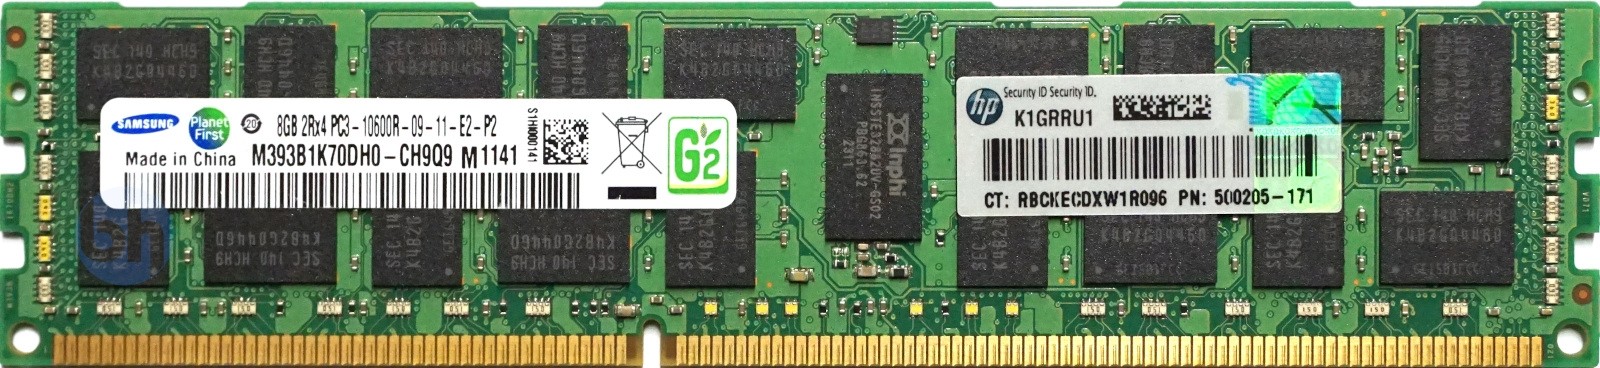 HP (500205-171) - 8GB PC3-10600R (DDR3-1333Mhz, 2RX4)